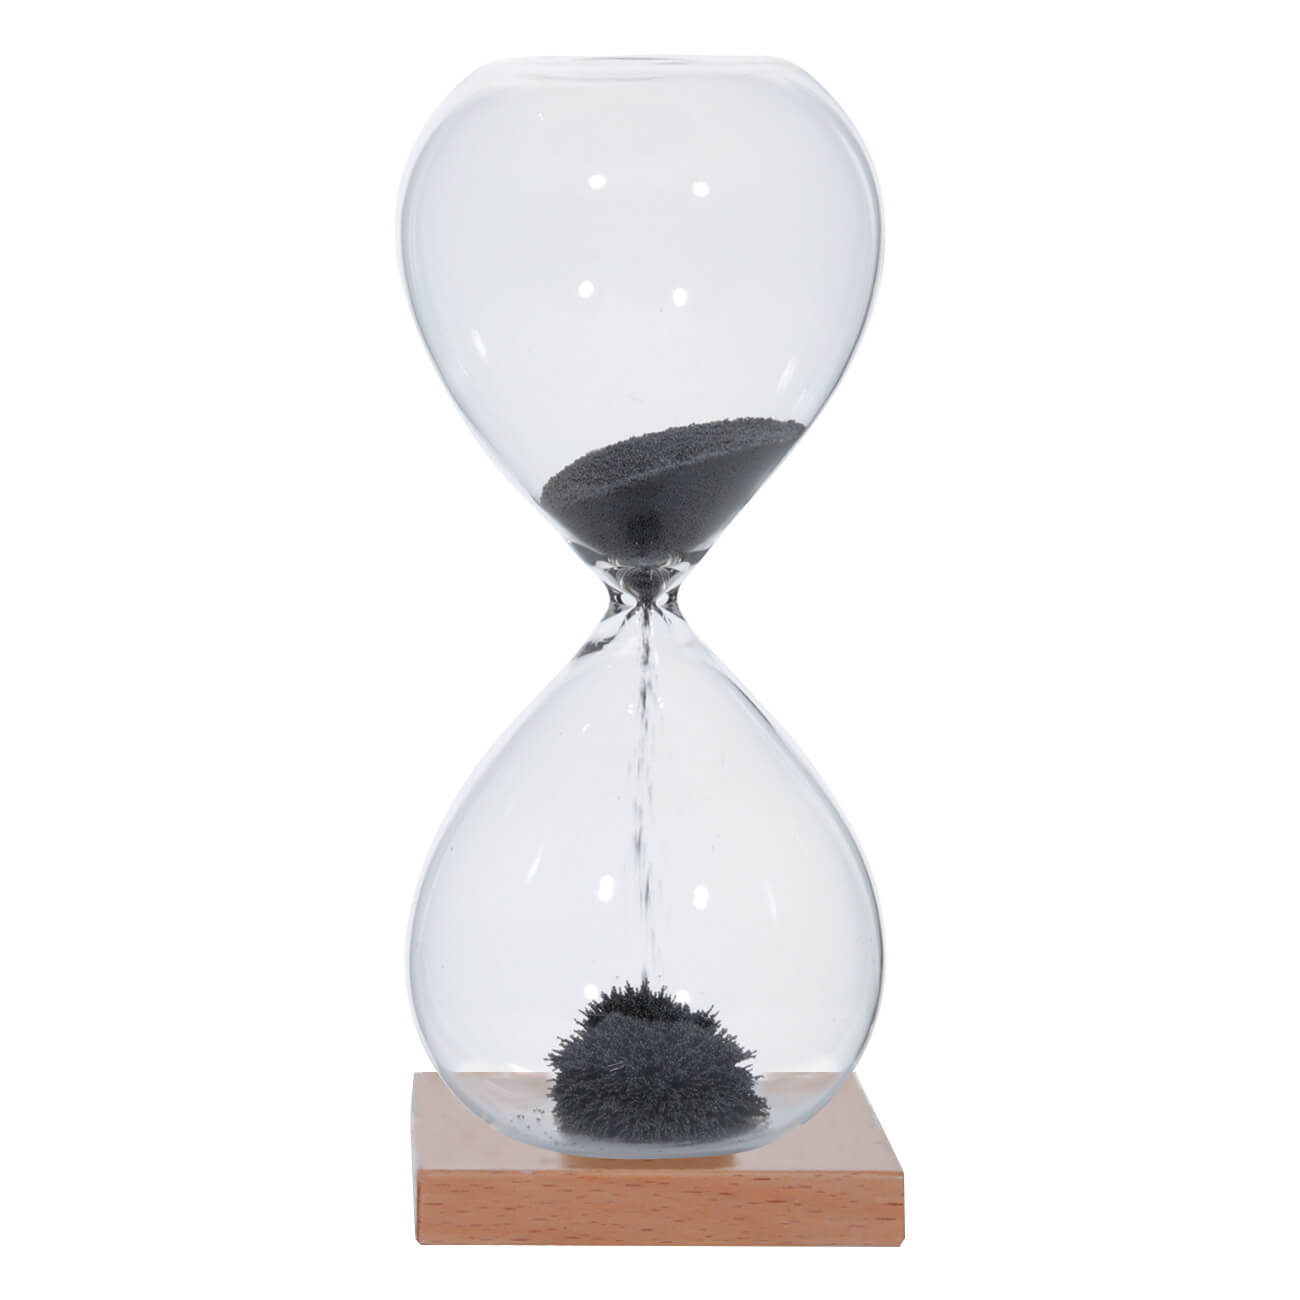 Часы песочные, 16 см, 1 минута, магнитные, на подставке, стекло/дерево, серые, Sand time наушники baseus b15 seal серые ngb15 02